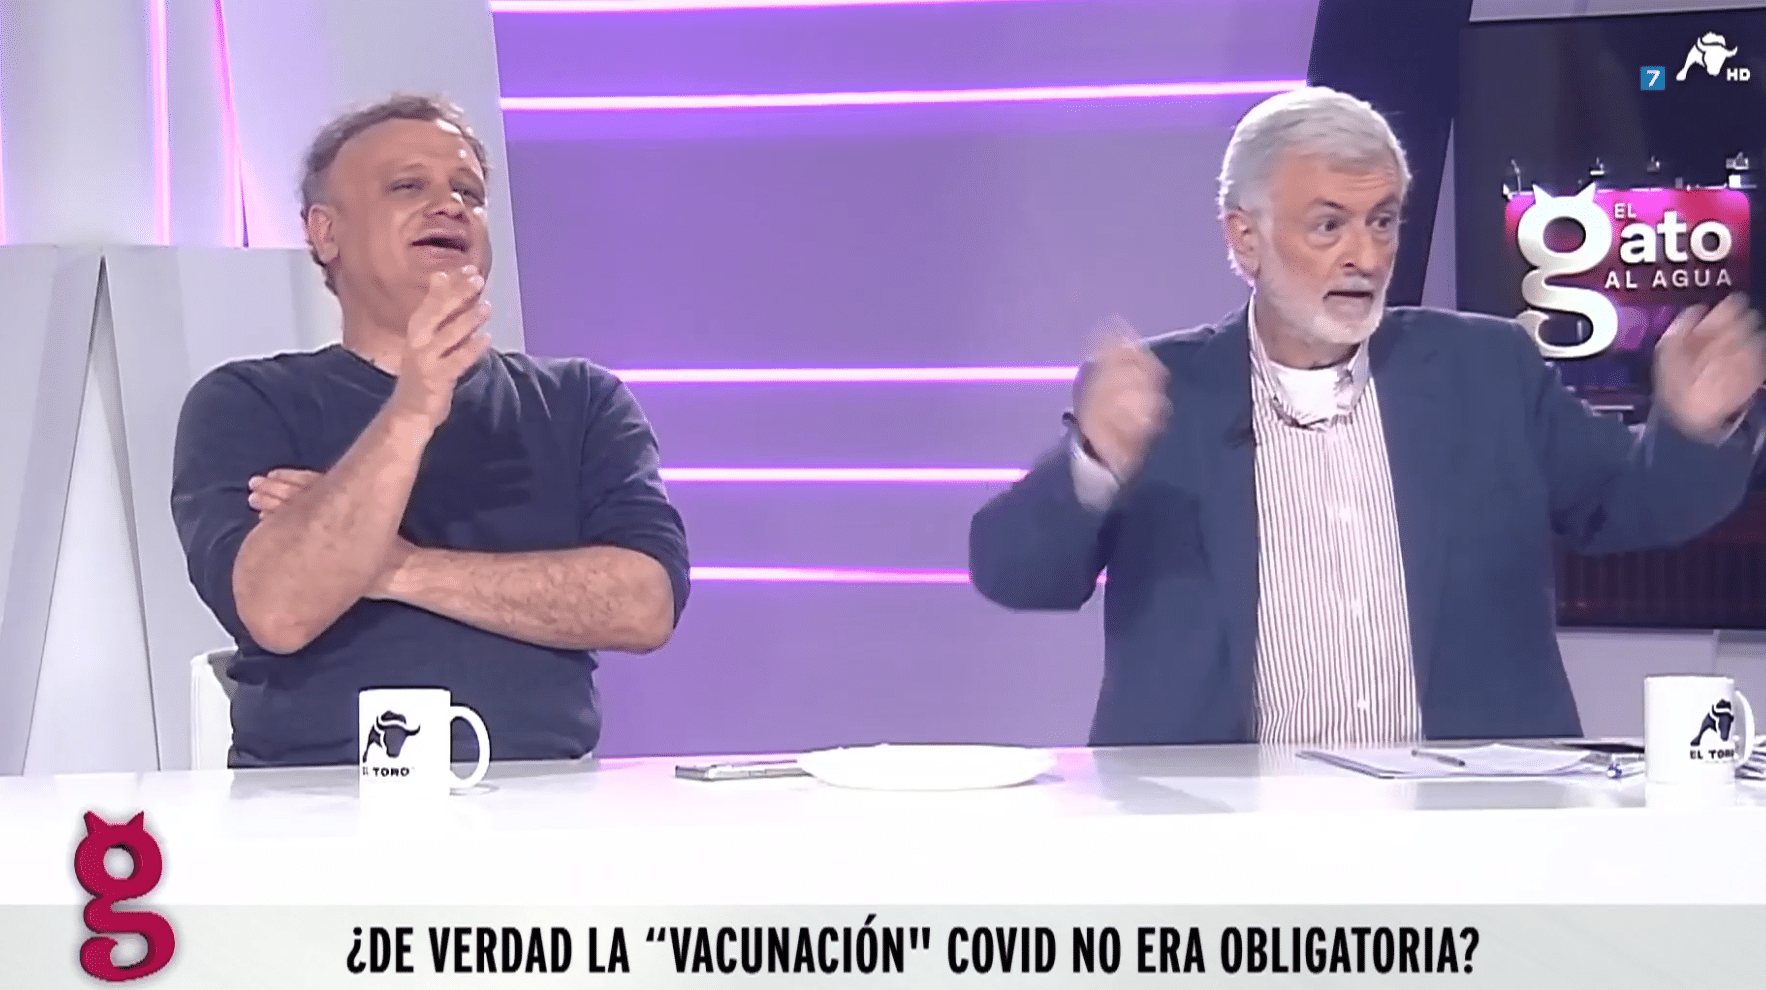 Durísimo enfrentamiento entre Quintana y Astiz sobre la muerte por la vacuna COVID